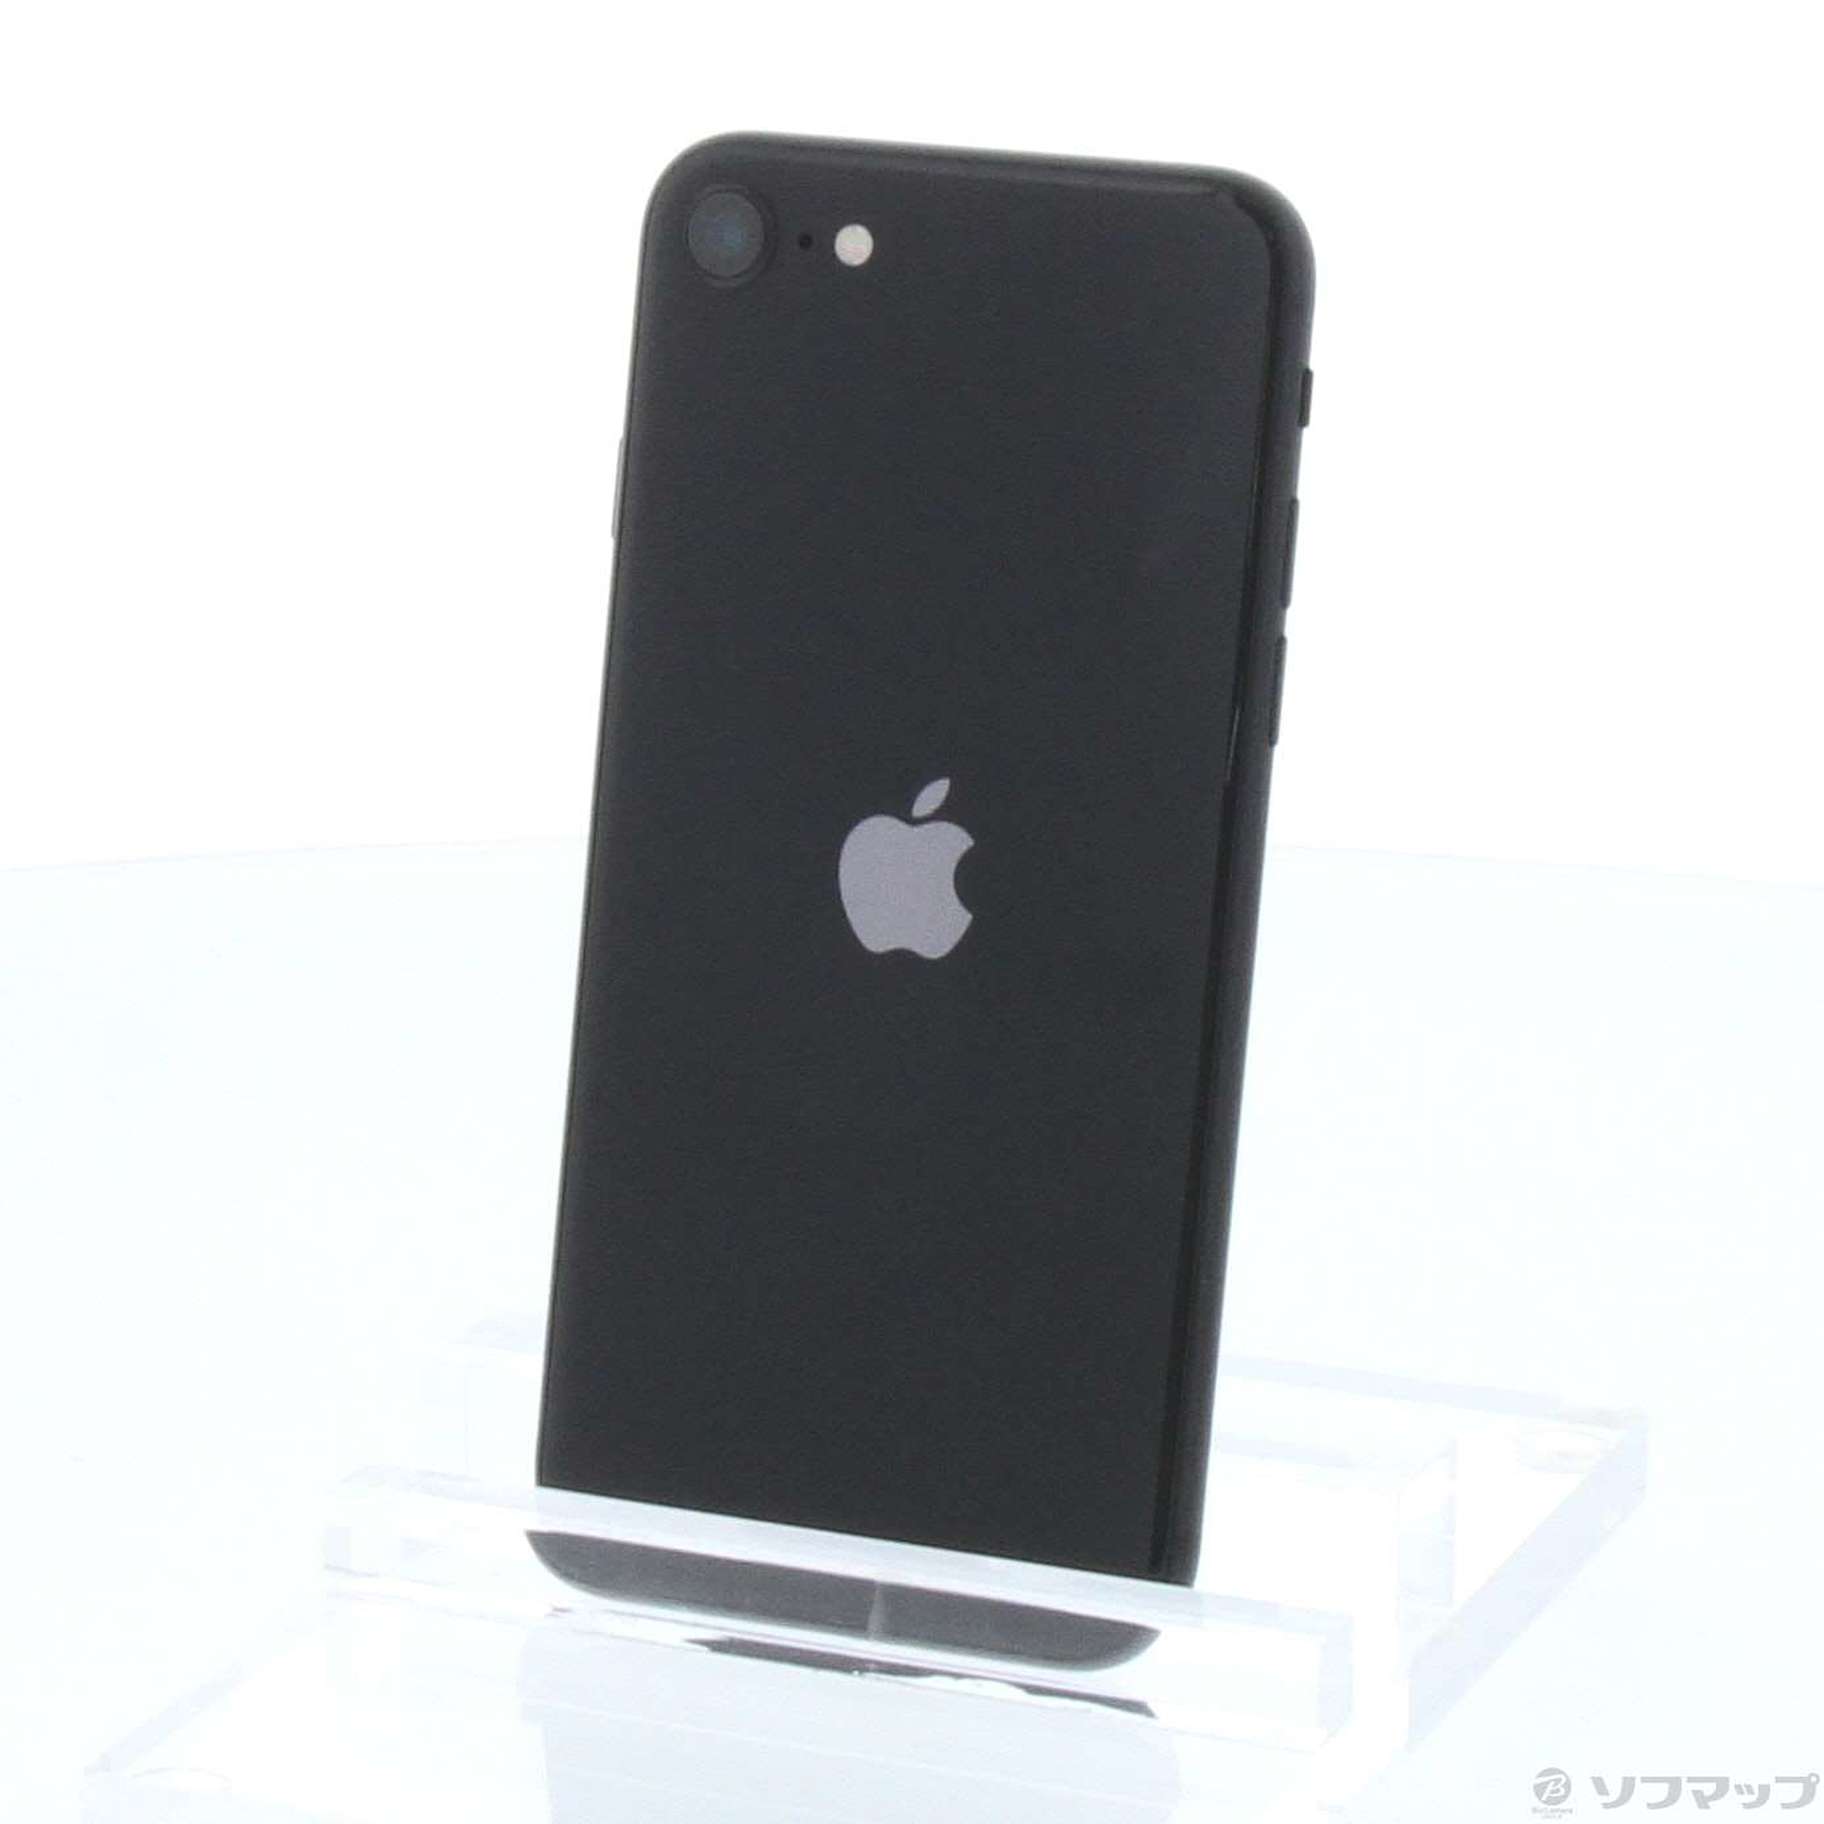 iPhone SE 第2世代 (SE2) 黒 ブラック 64GBスマートフォン/携帯電話